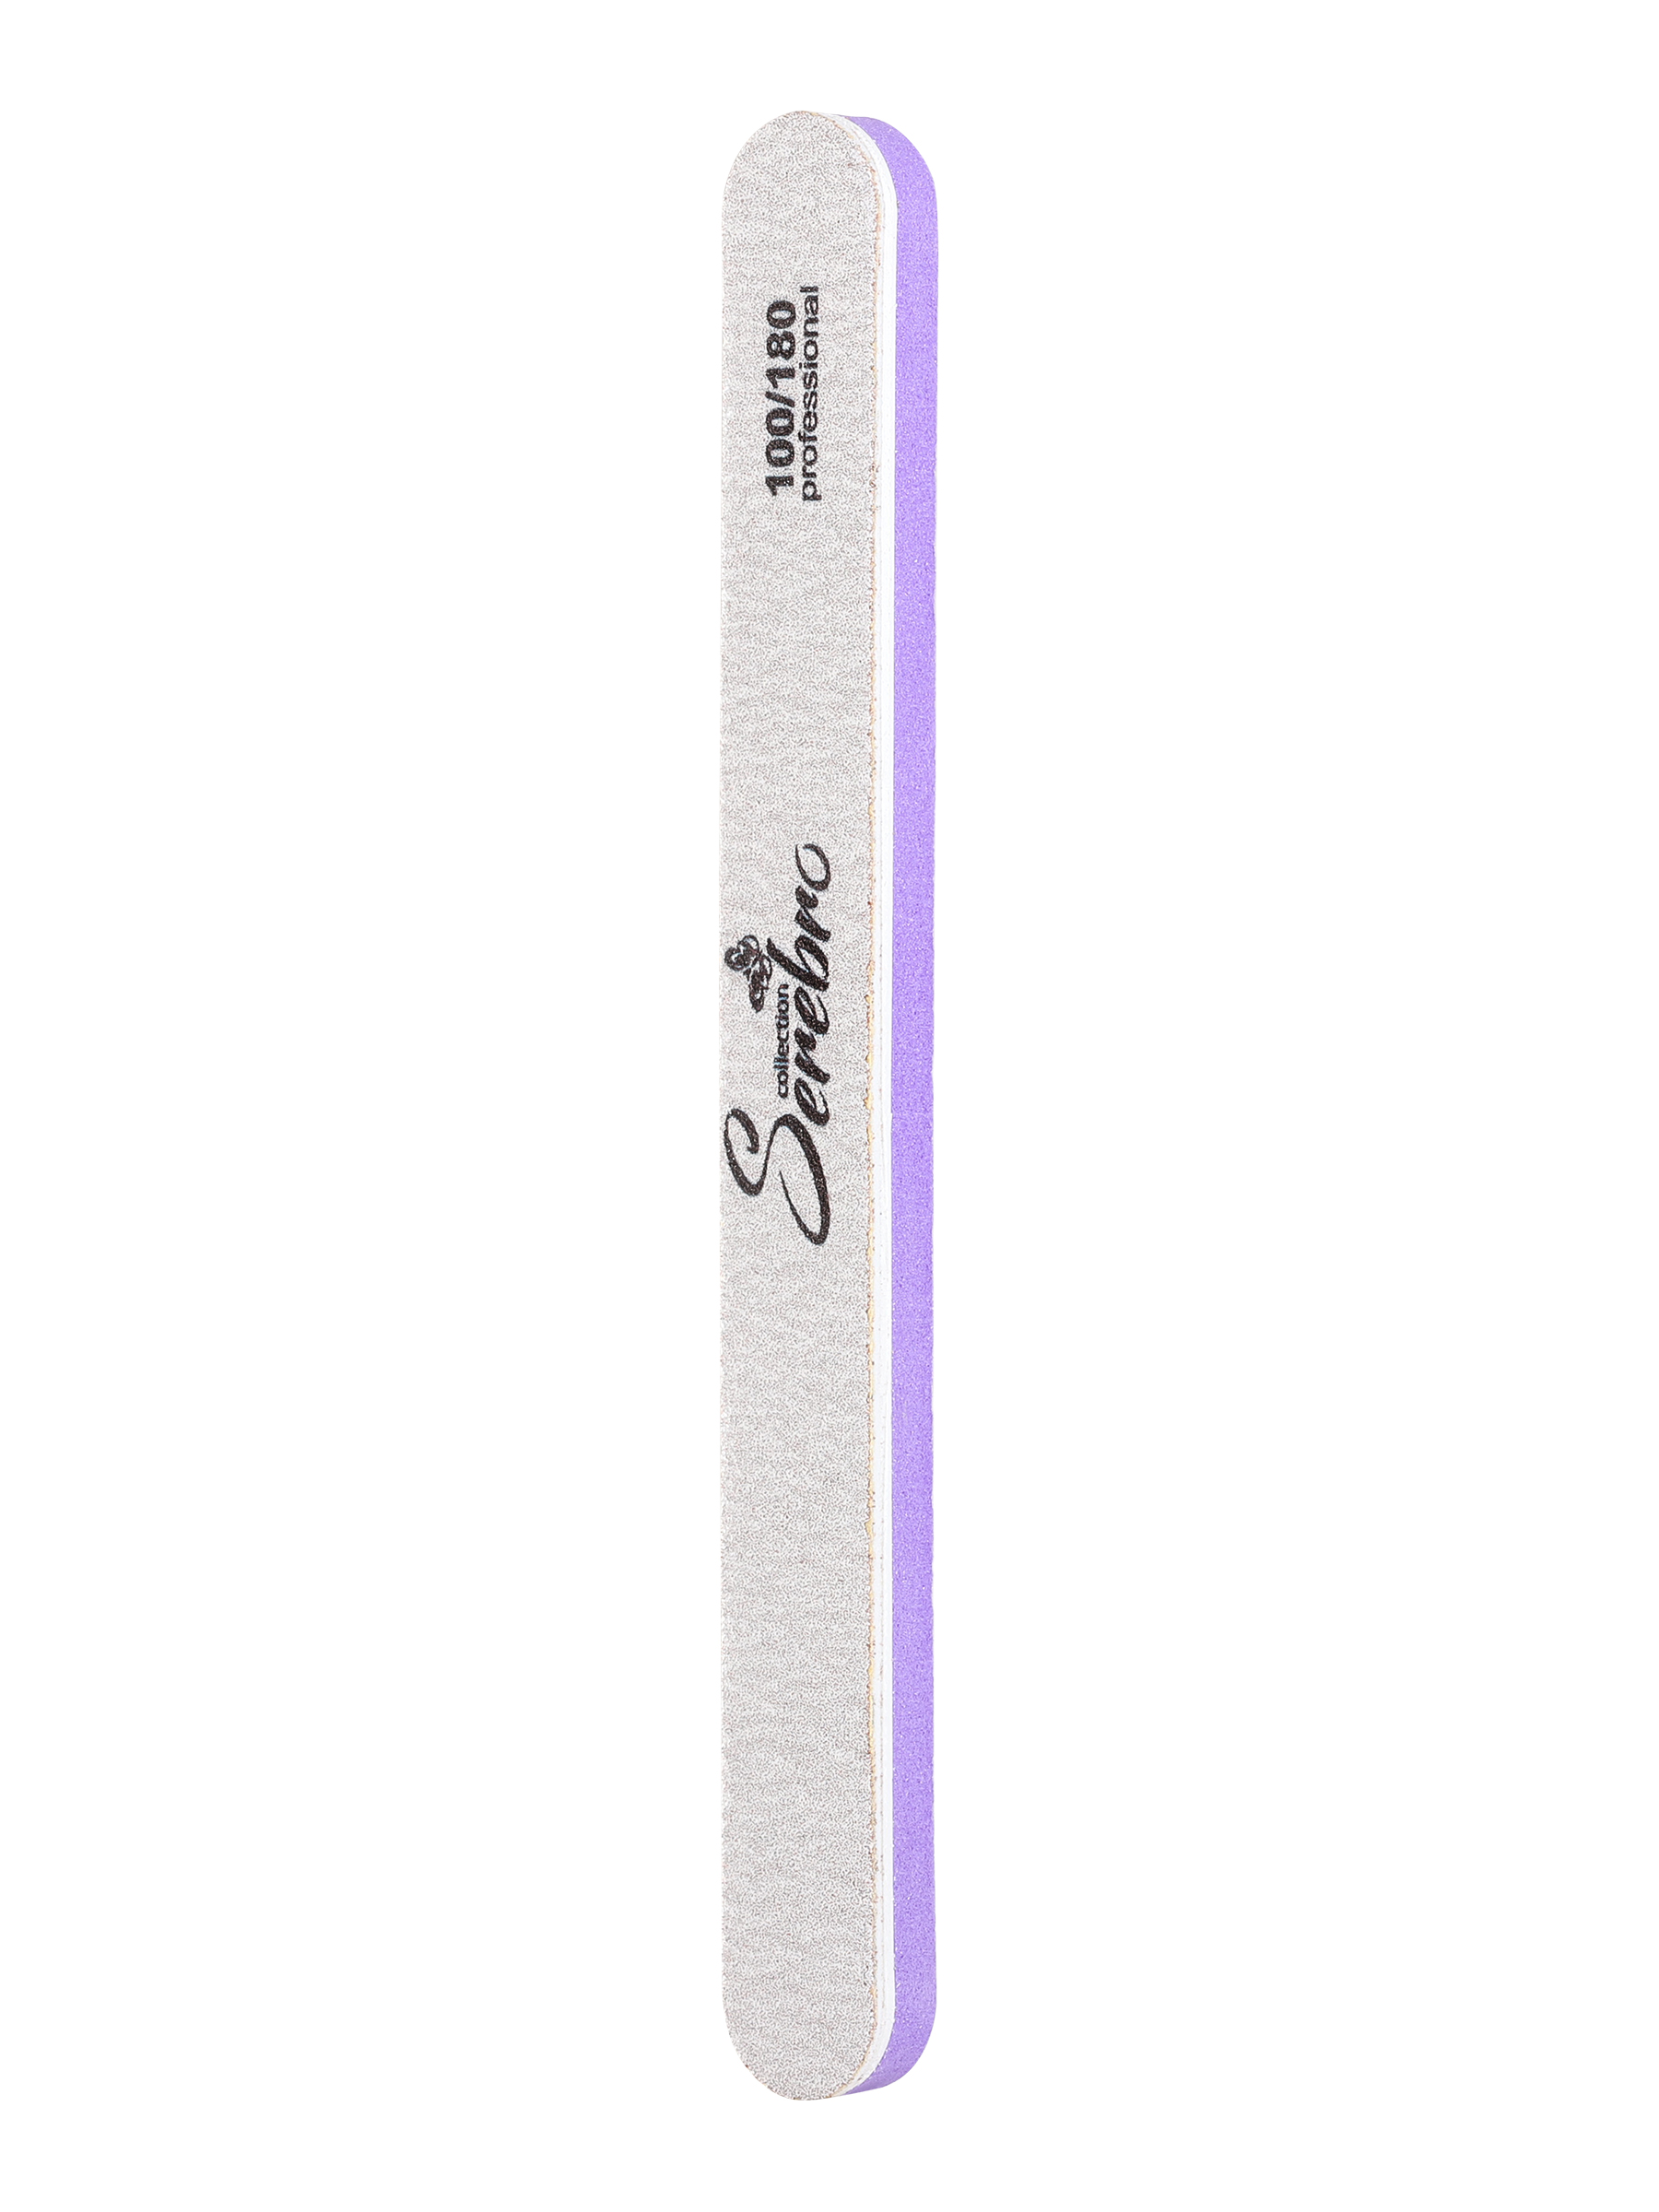 Пилка для ногтей Serebro одноразовая, профессиональная, шлифовщик для маникюра, 100/180 пилка для маникюра kaizer шлифовальная